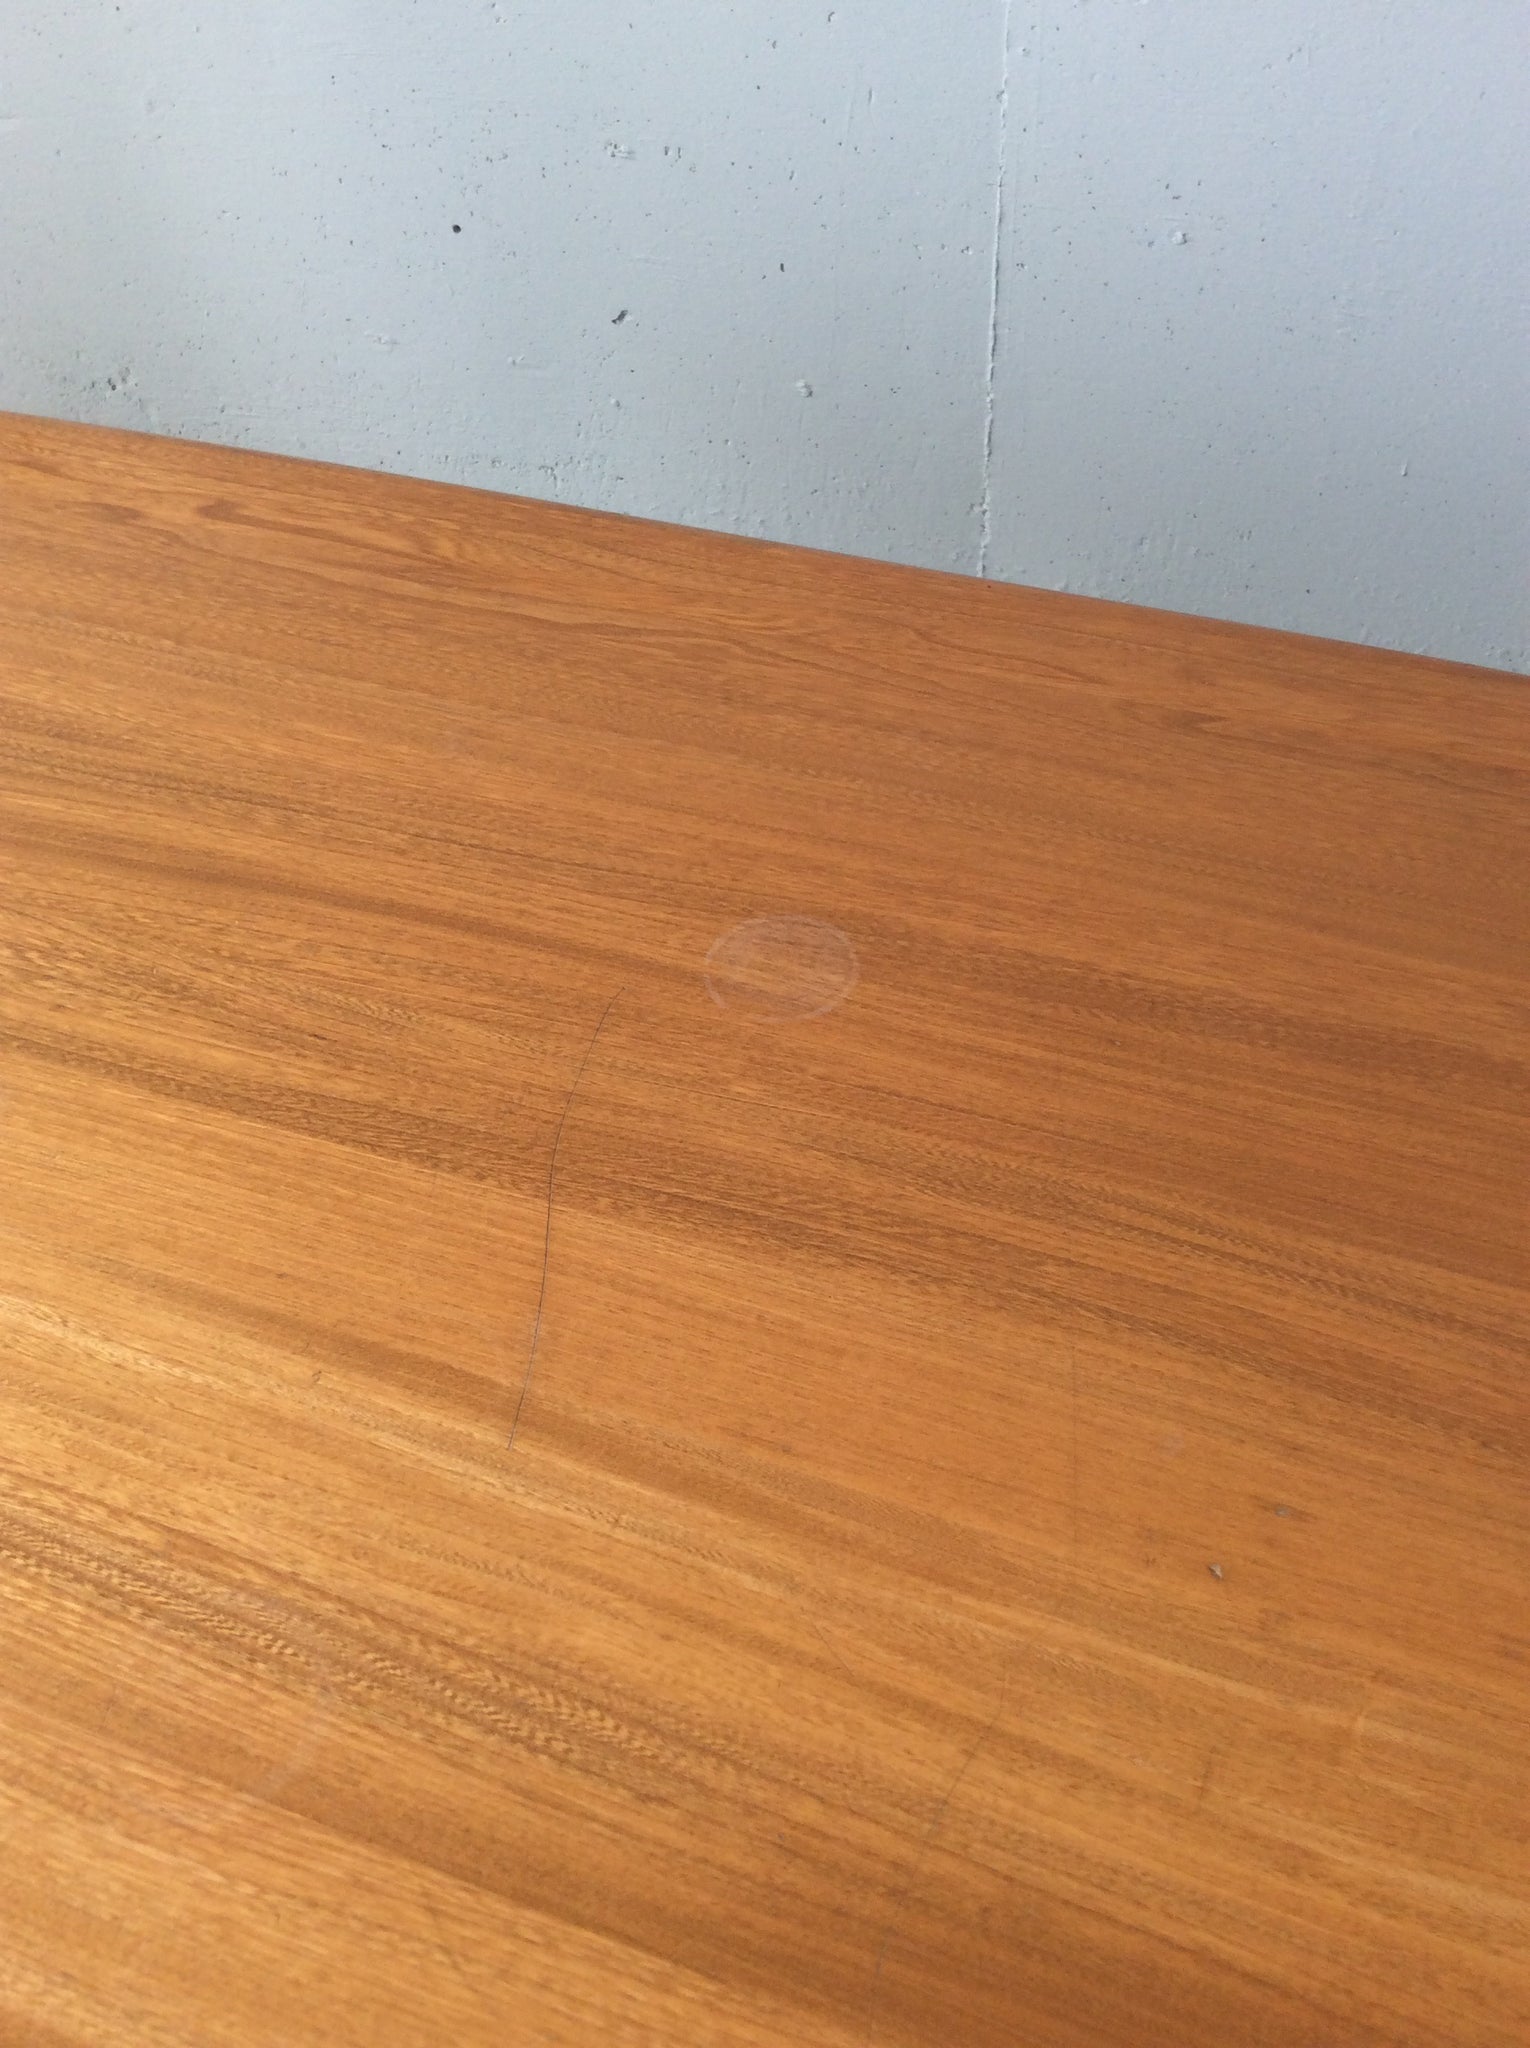 アーコール ウィンザー エルム ダイニング テーブル / ercol windsor elm dining table '822' #0110